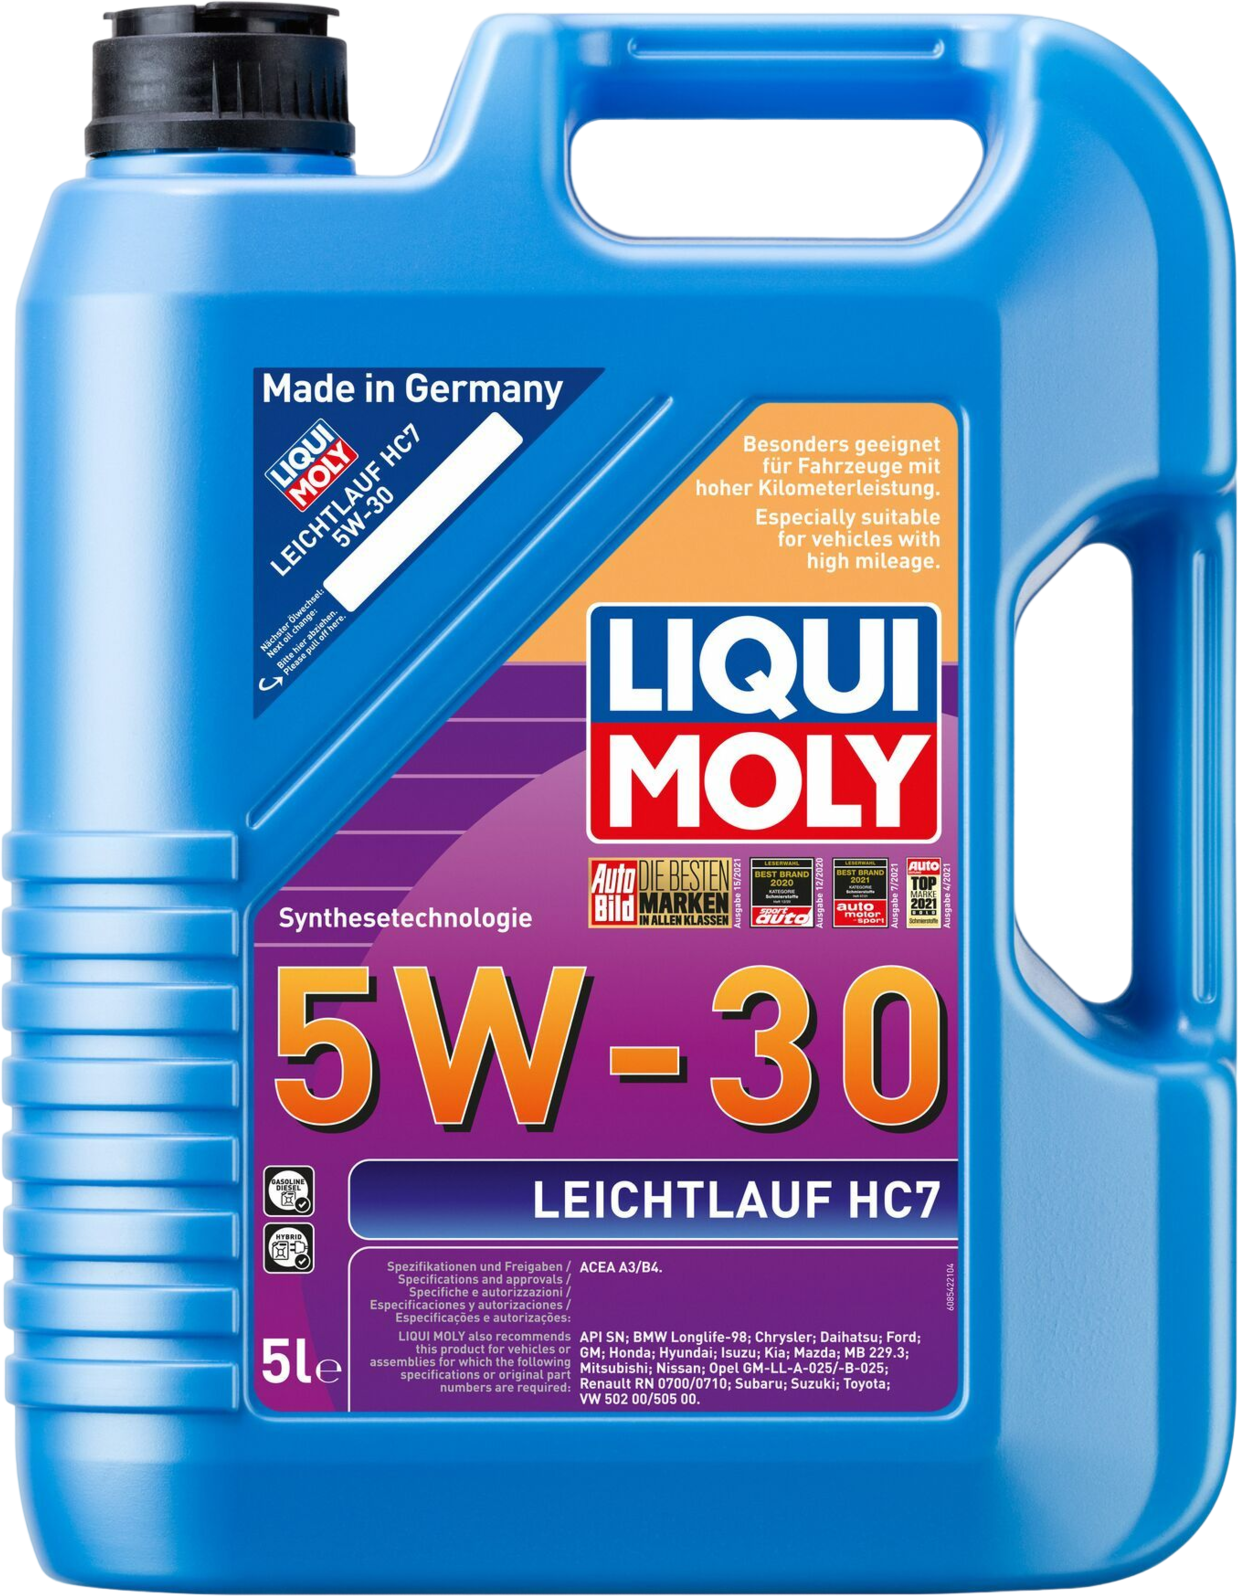 Liqui Moly Leichtlauf HC7 5W-30, 5 lt